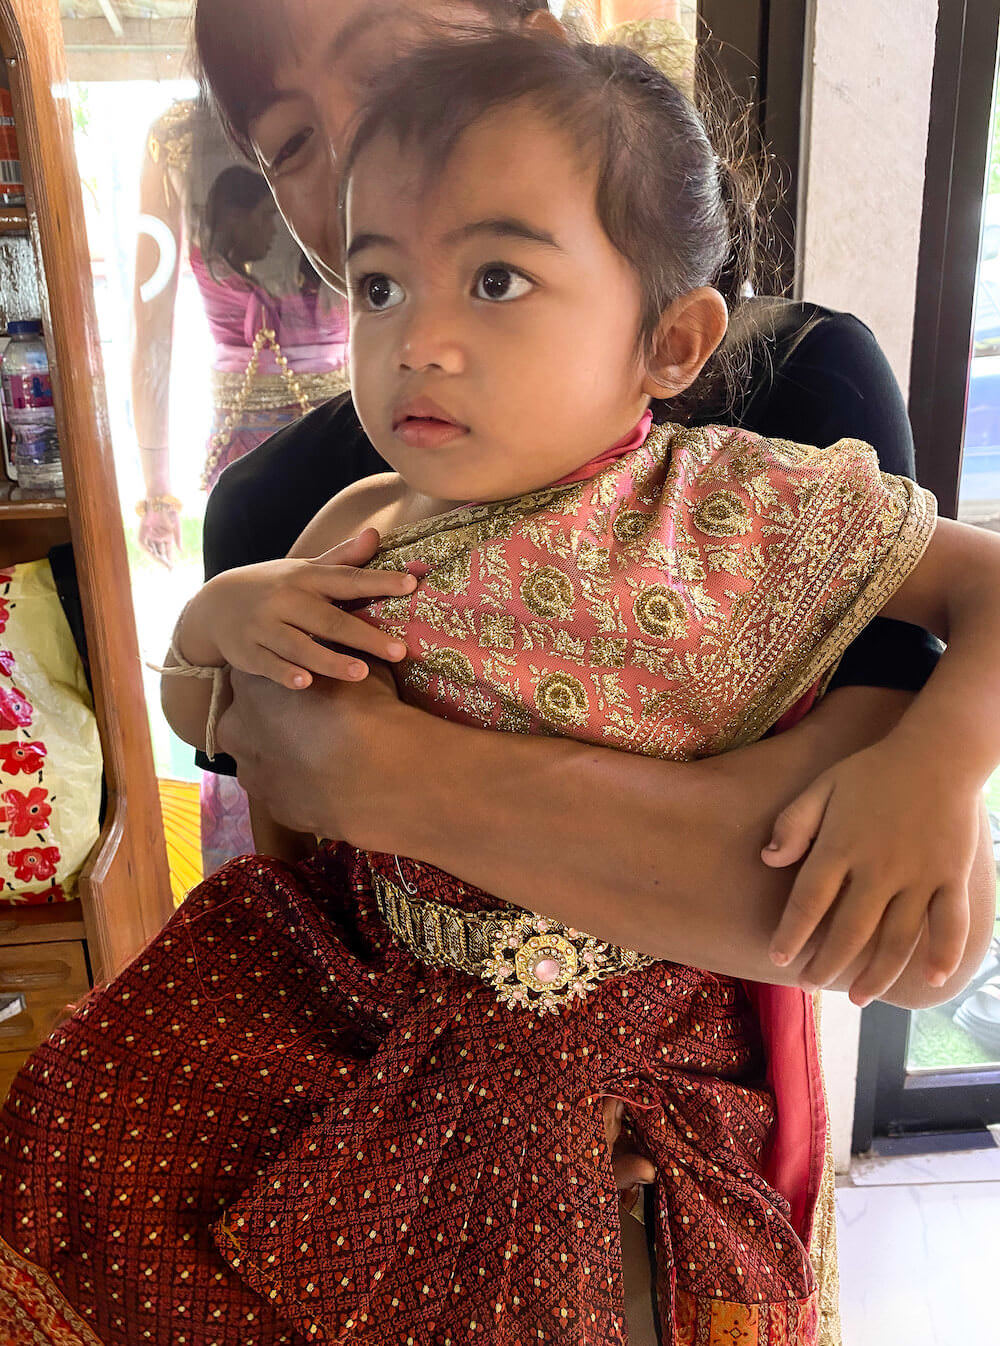 タイ民族衣装を着ている子供